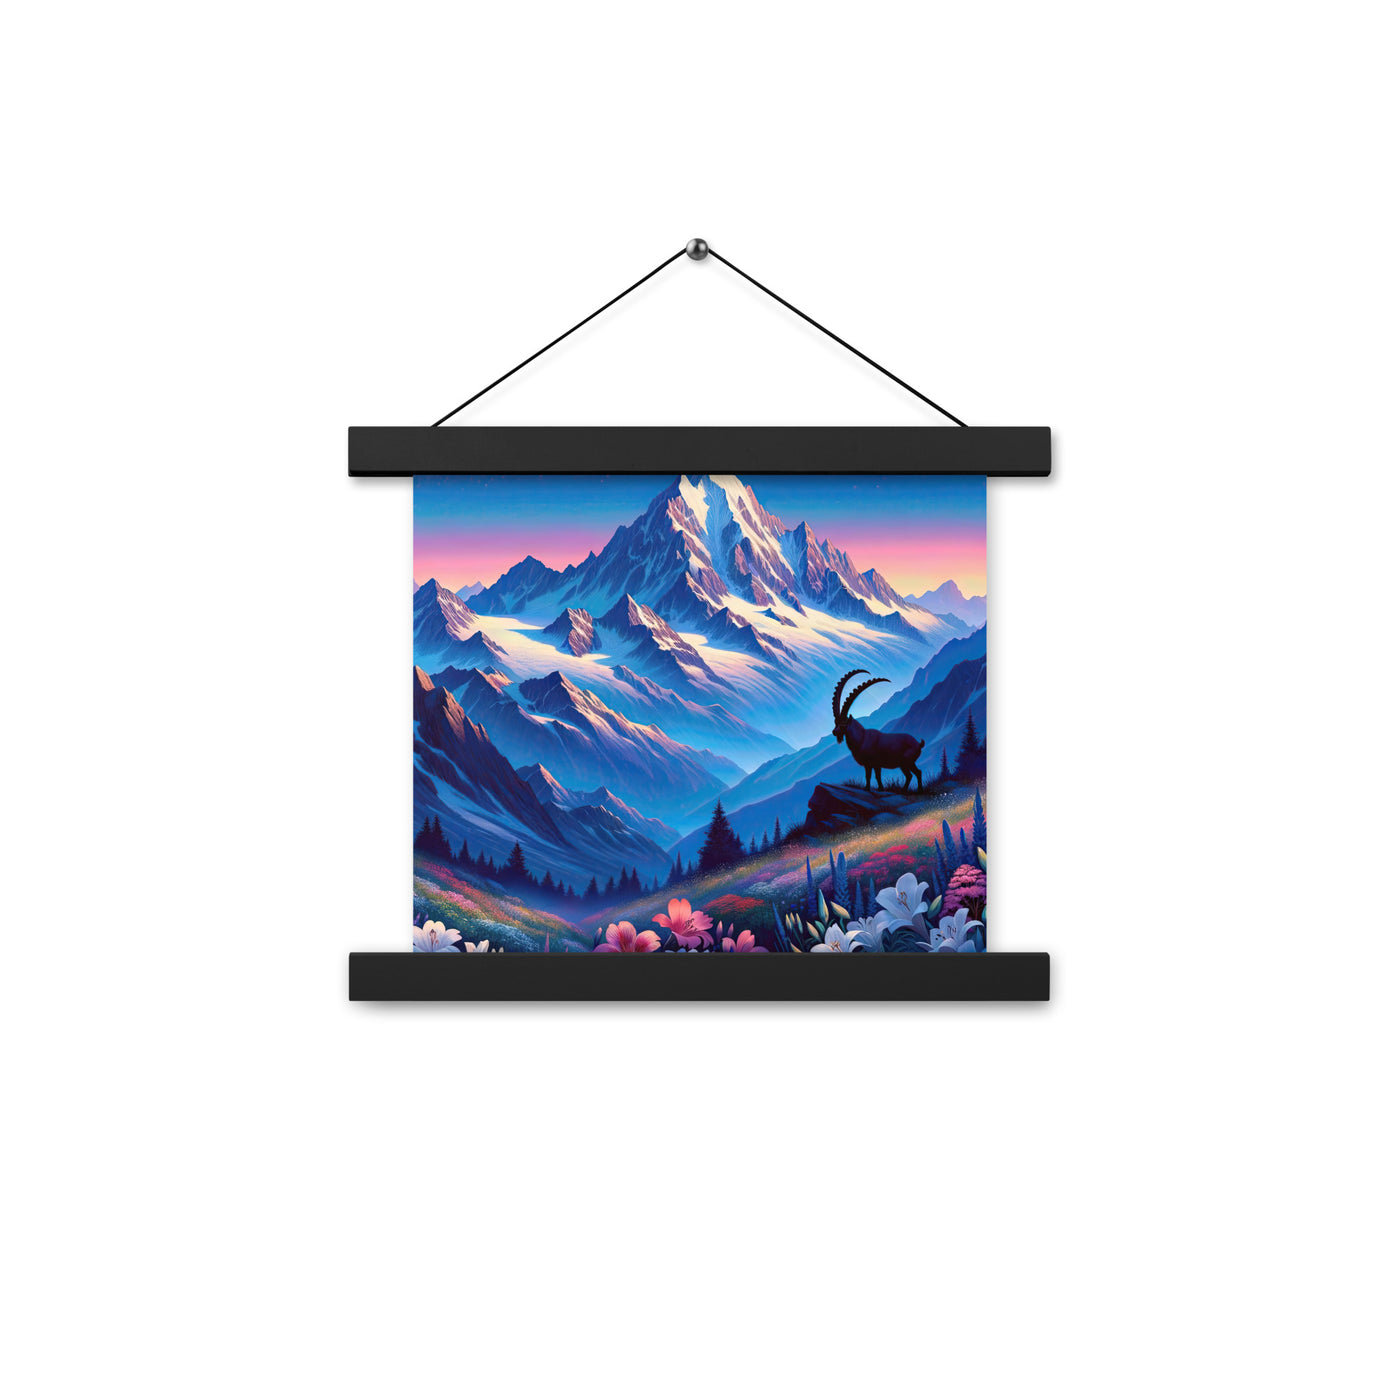 Steinbock bei Dämmerung in den Alpen, sonnengeküsste Schneegipfel - Premium Poster mit Aufhängung berge xxx yyy zzz 25.4 x 25.4 cm